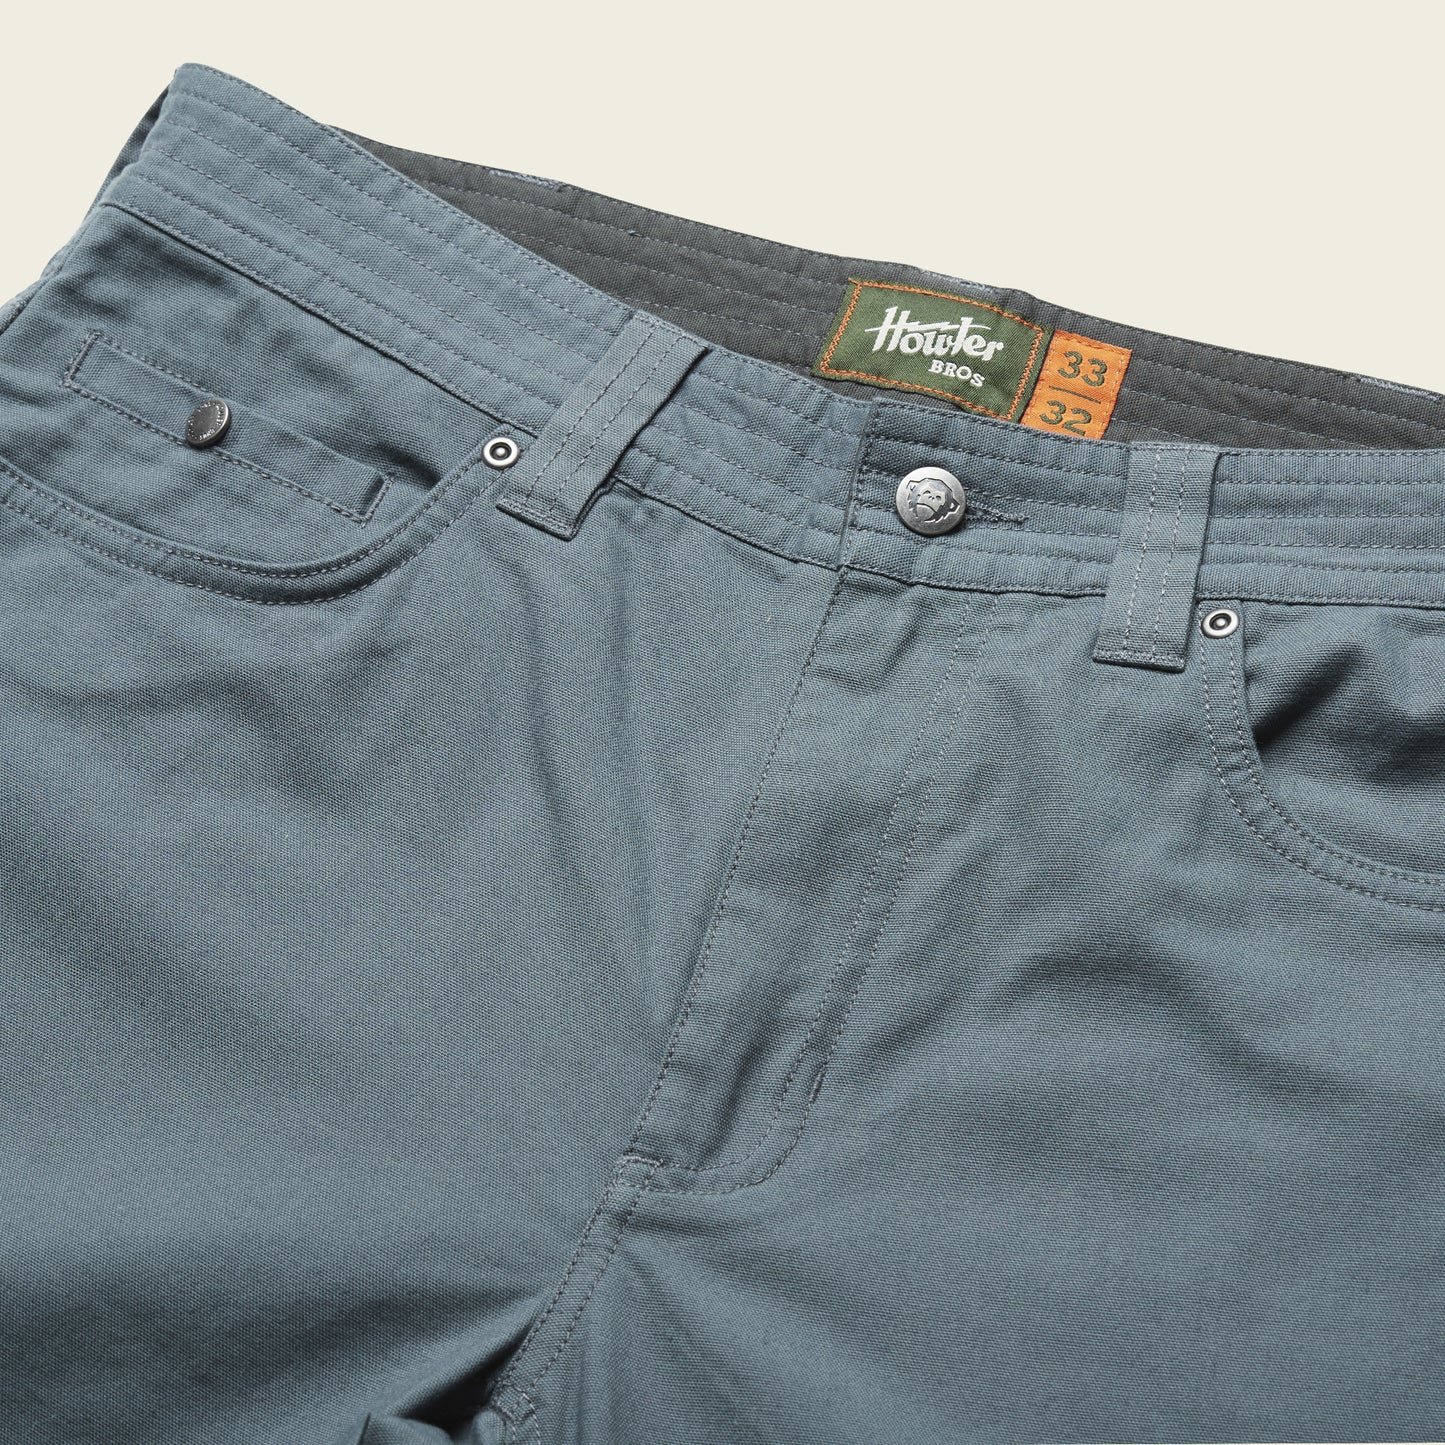 Frontside 5-Pocket Pants